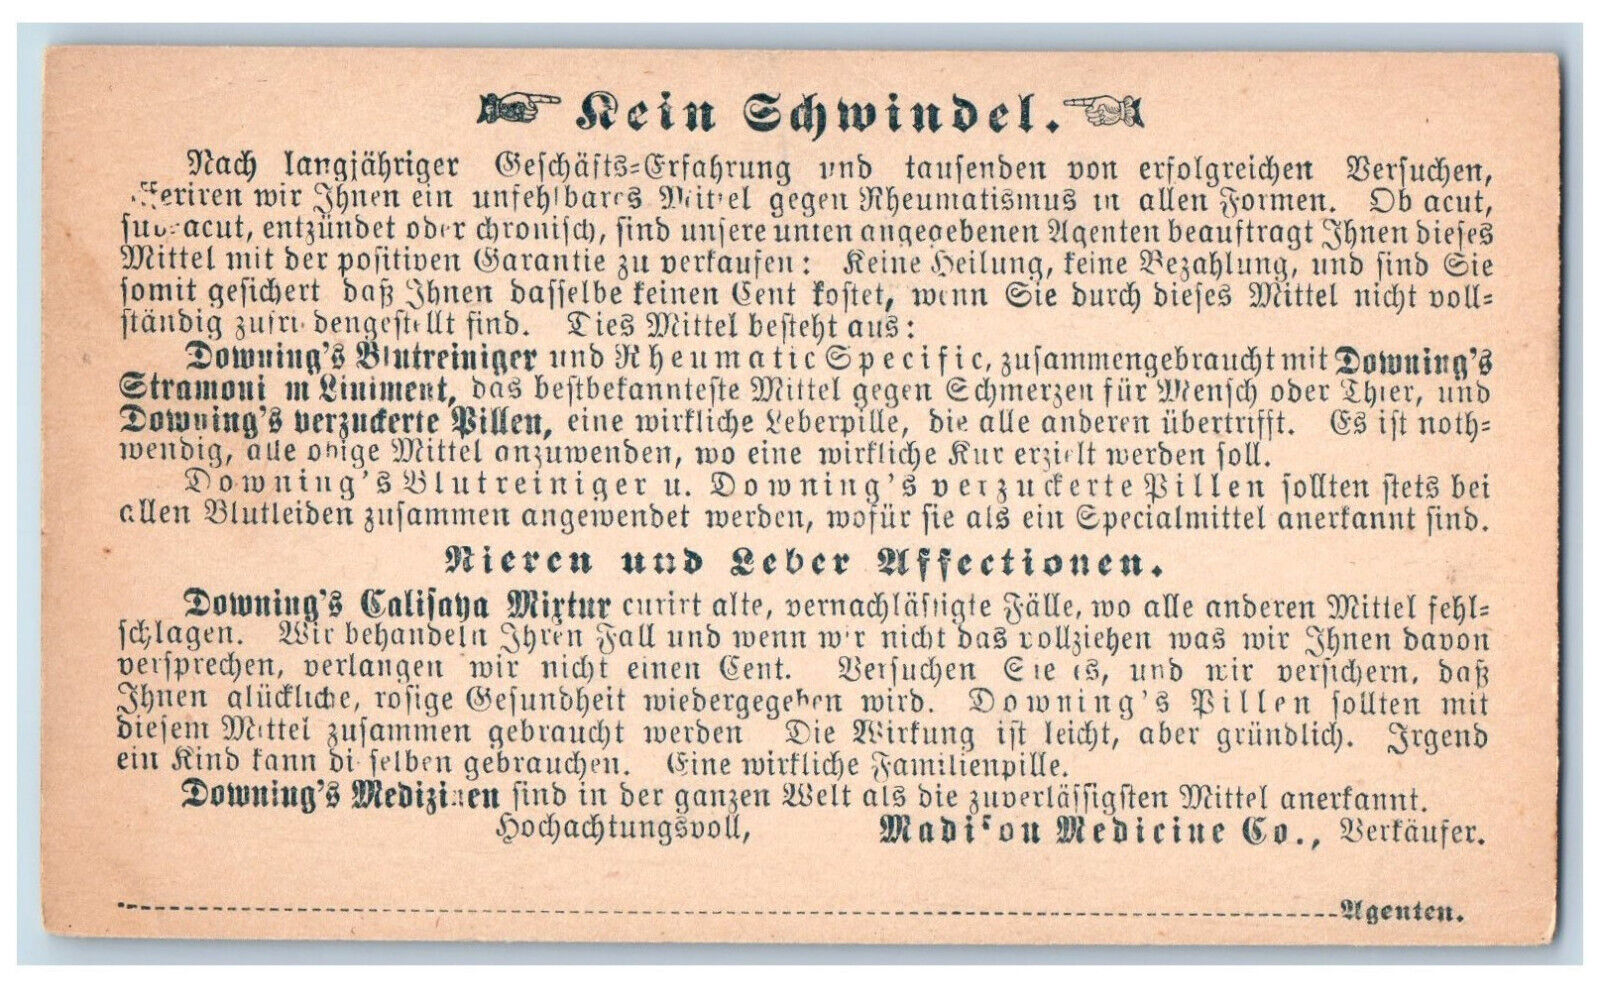 Postal Card Rein Schwindel Madison Medicine Co. Kidney Liver Affections c1905